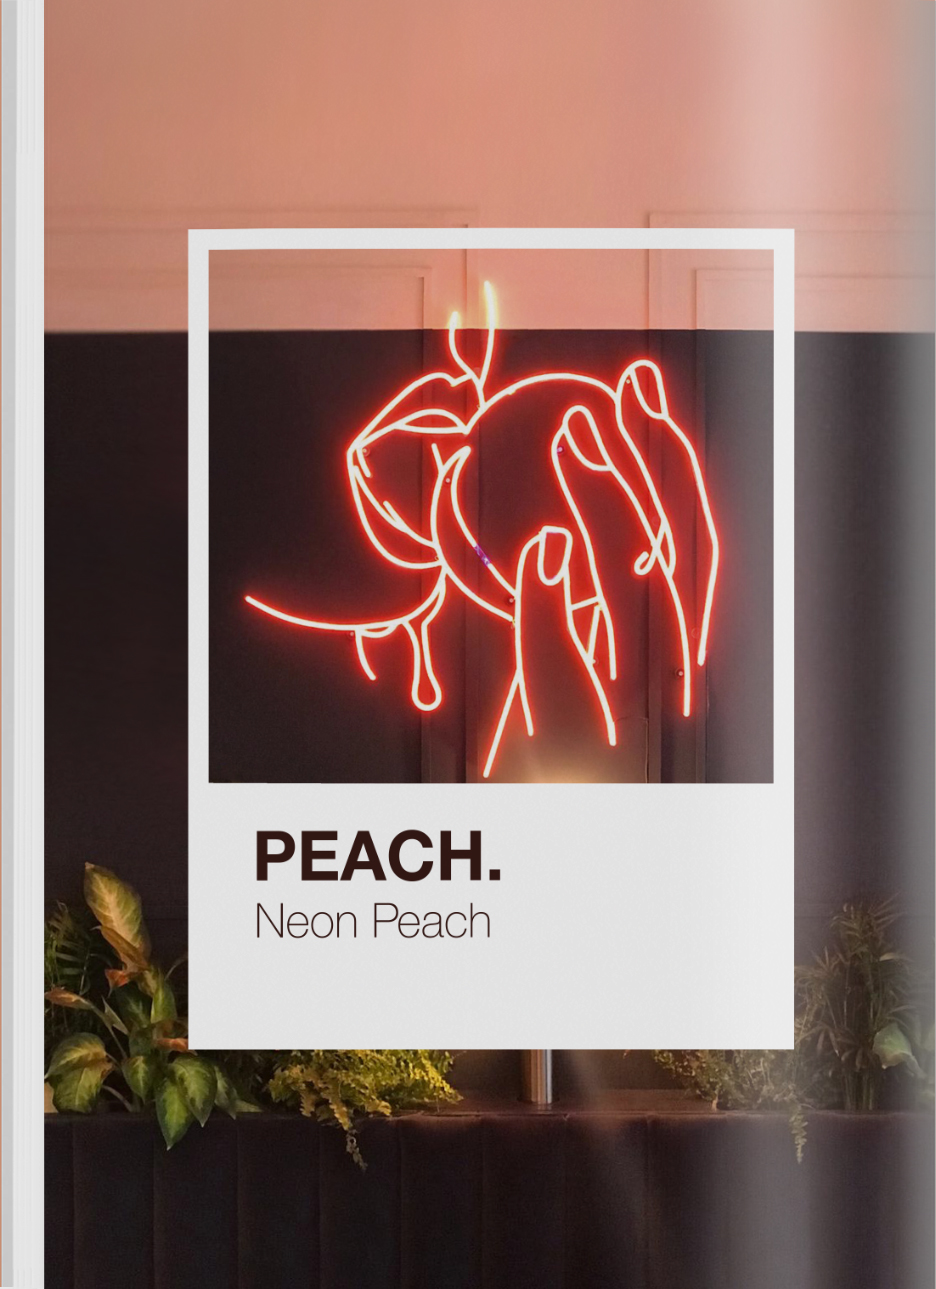 A neon scolpture of a woman eatign a peach